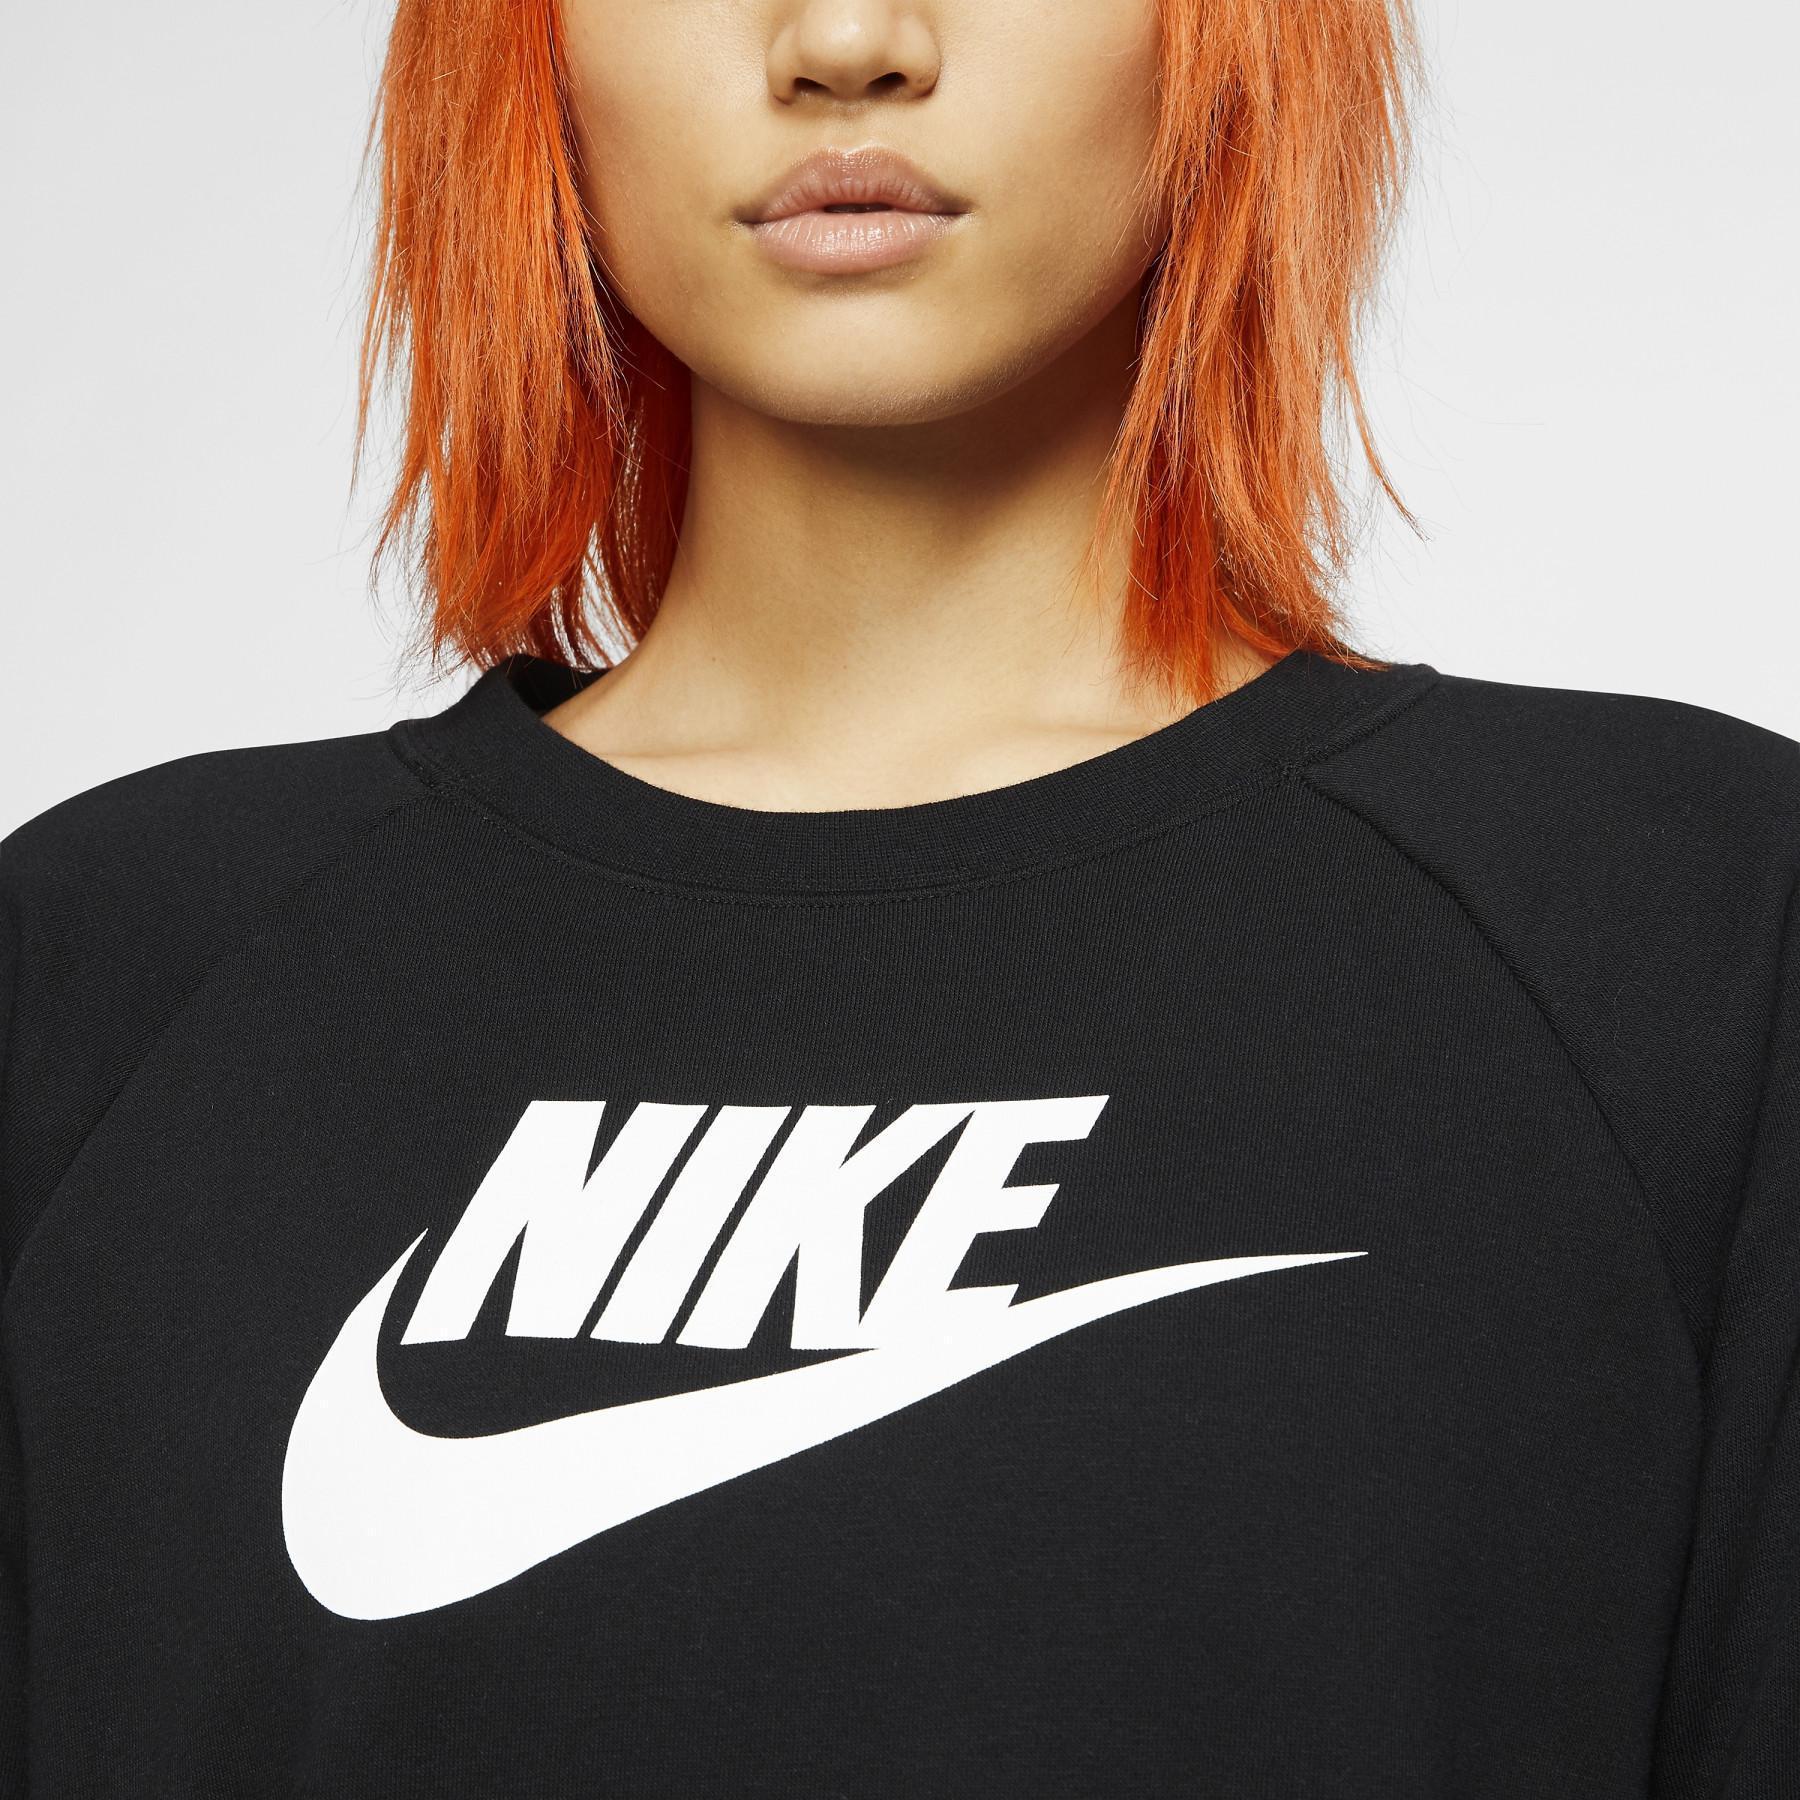 Sweatshirt woman Nike Sportswear Essential